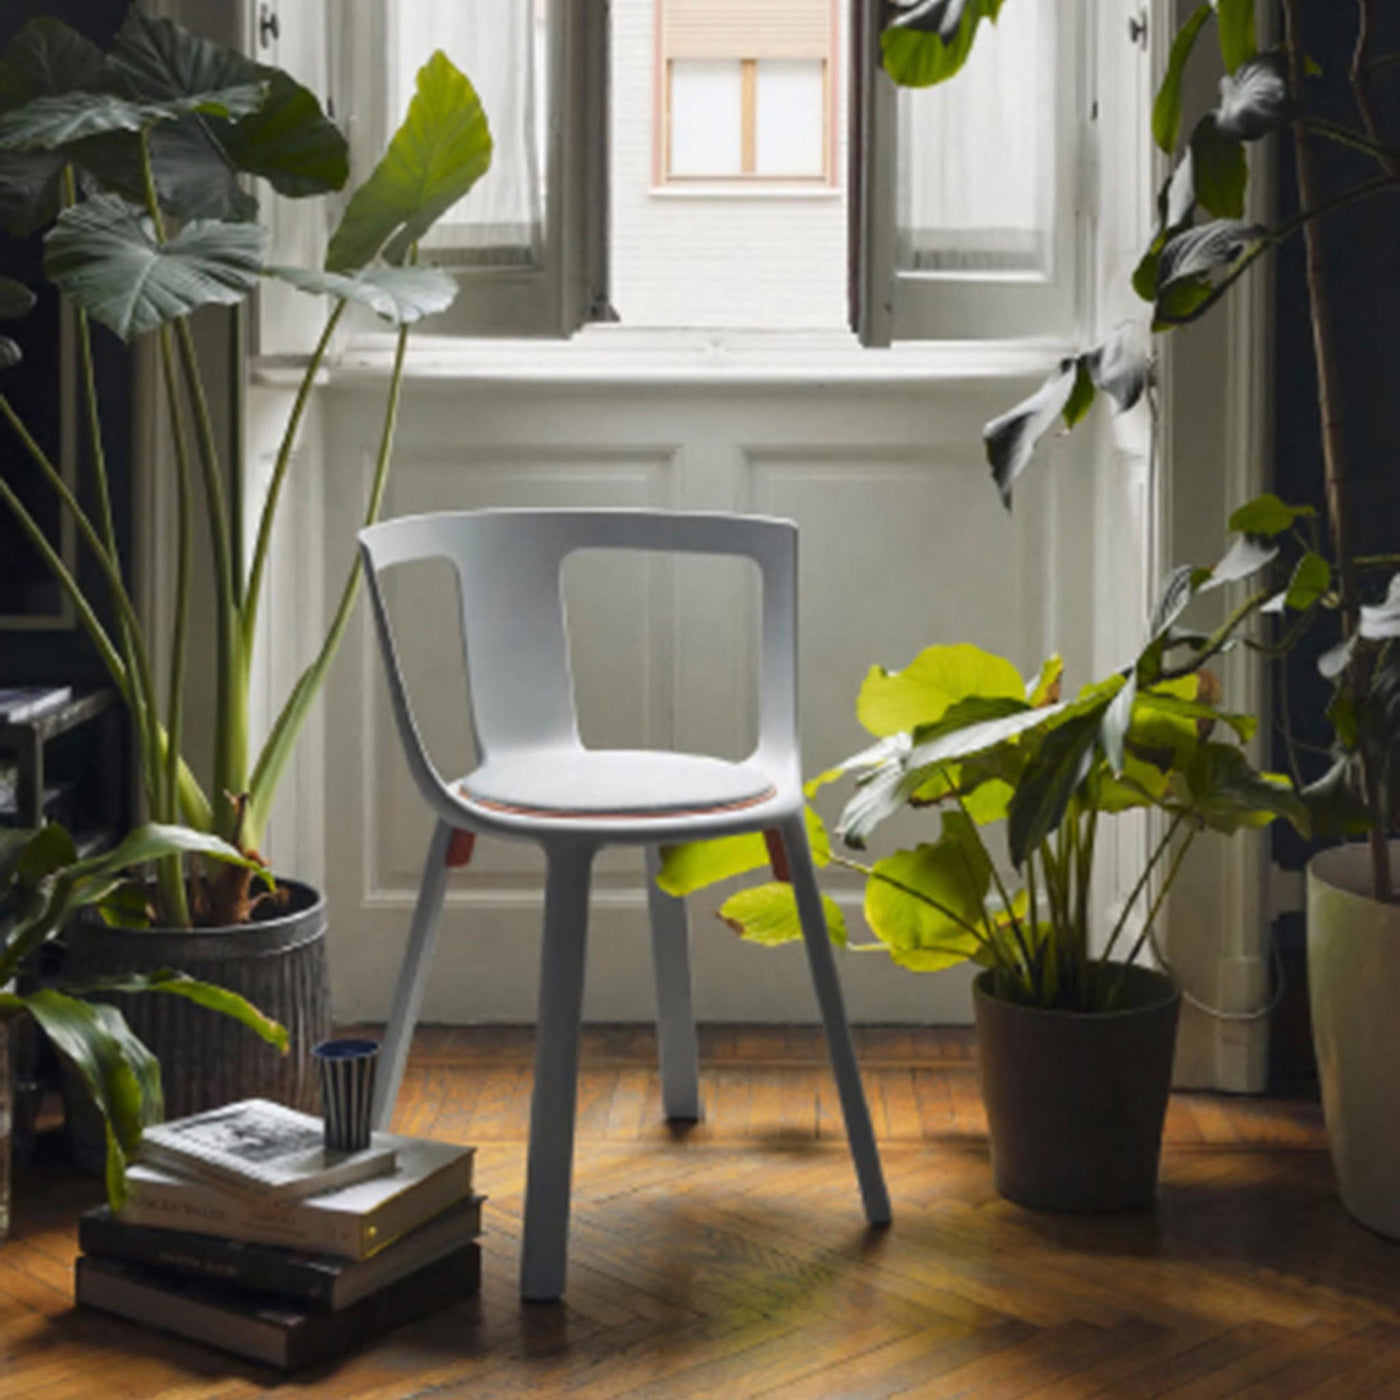 La chaise FLA de TOOU, avec ses ailettes orange vif, incarne l'union parfaite entre esthétique et fonctionnalité, offrant une solution d'empilement élégante et pratique.